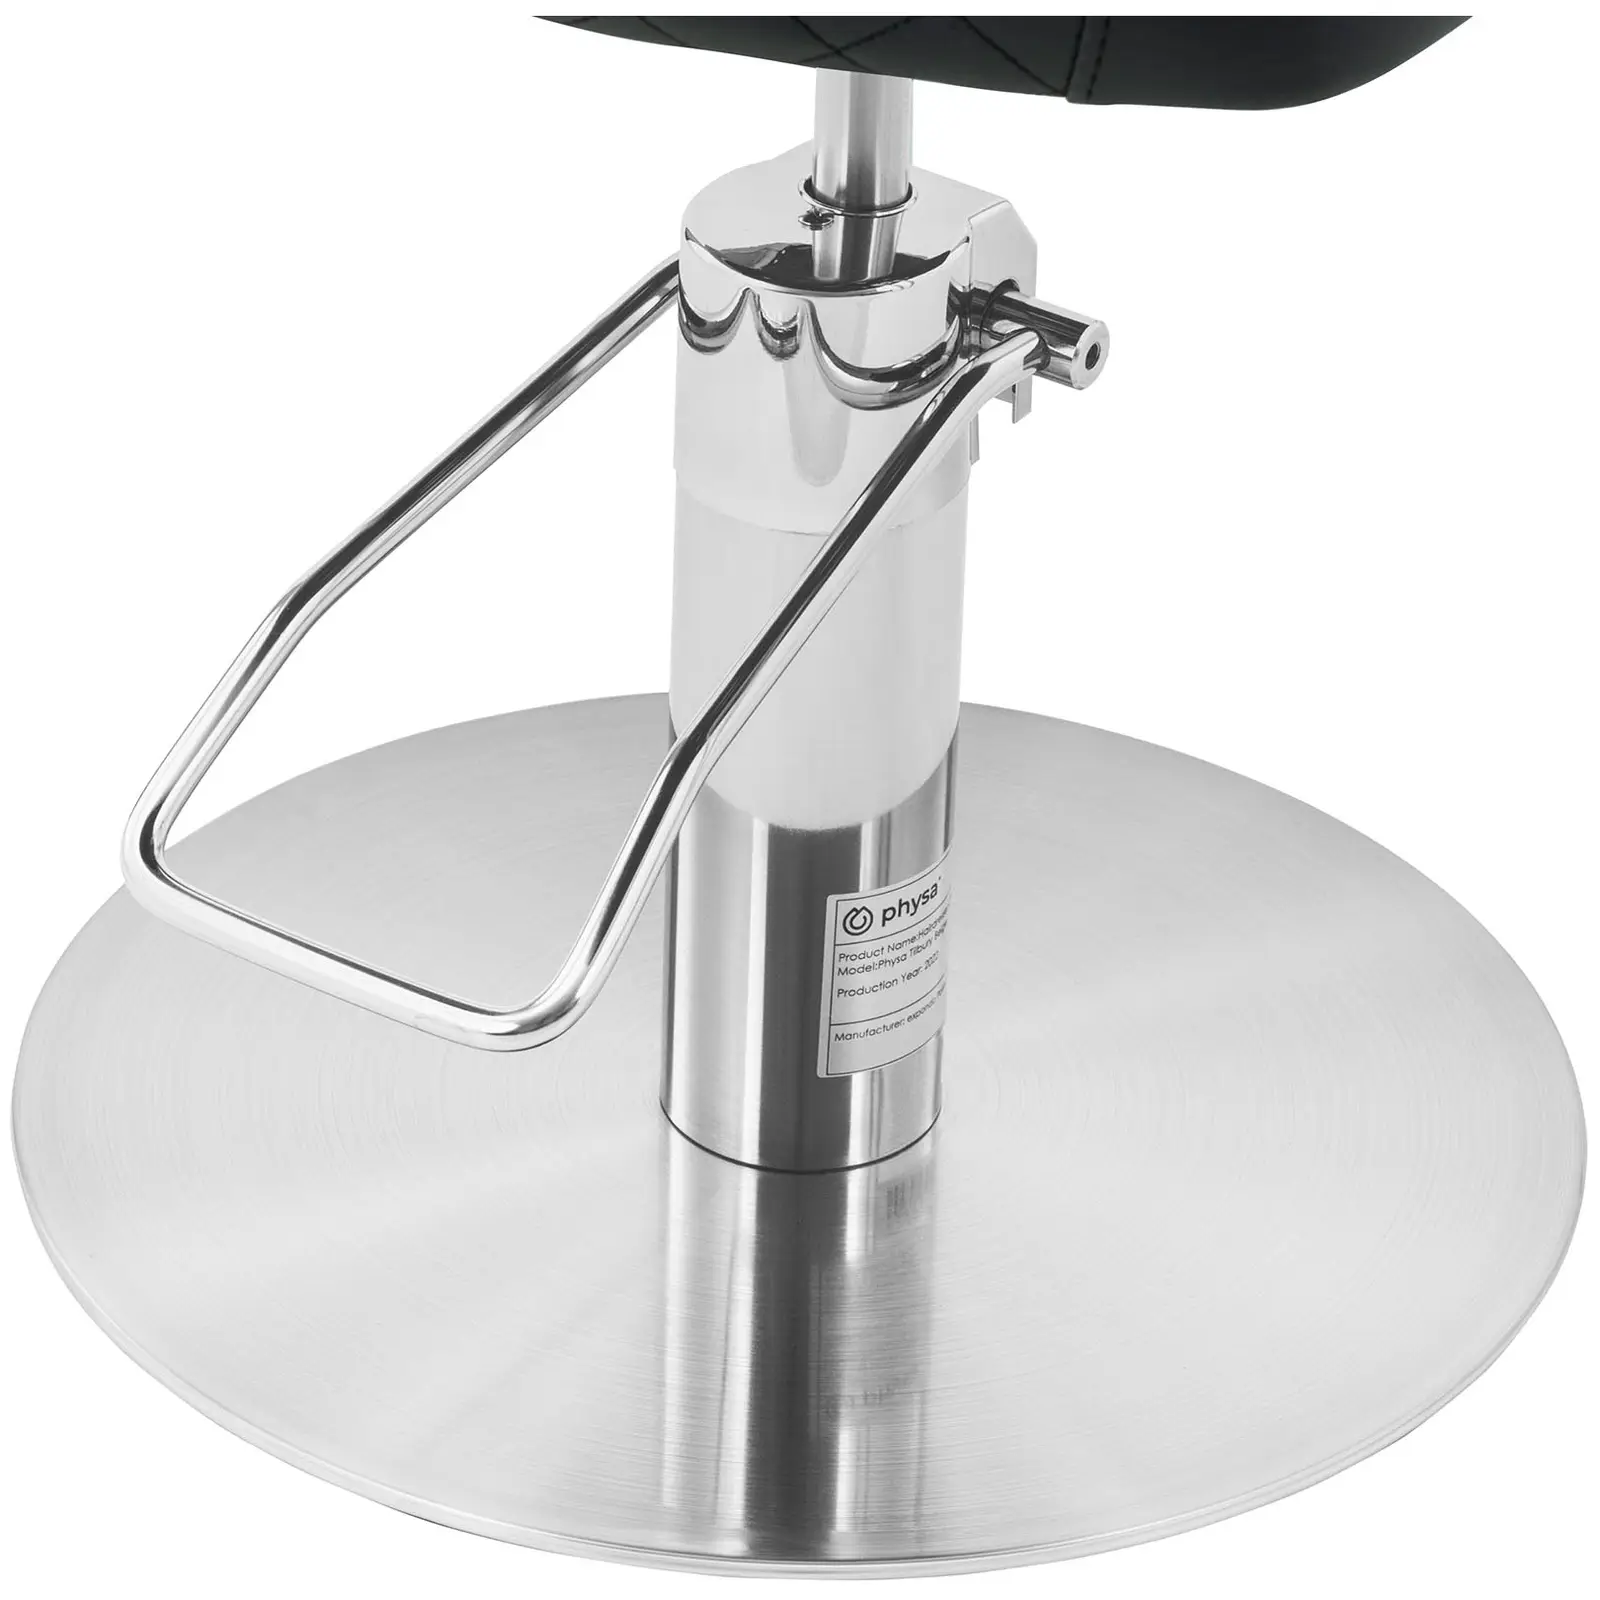 Friseurstuhl mit Fußstütze - 870 - 1020 mm - 200 kg - Schwarz, Silbern